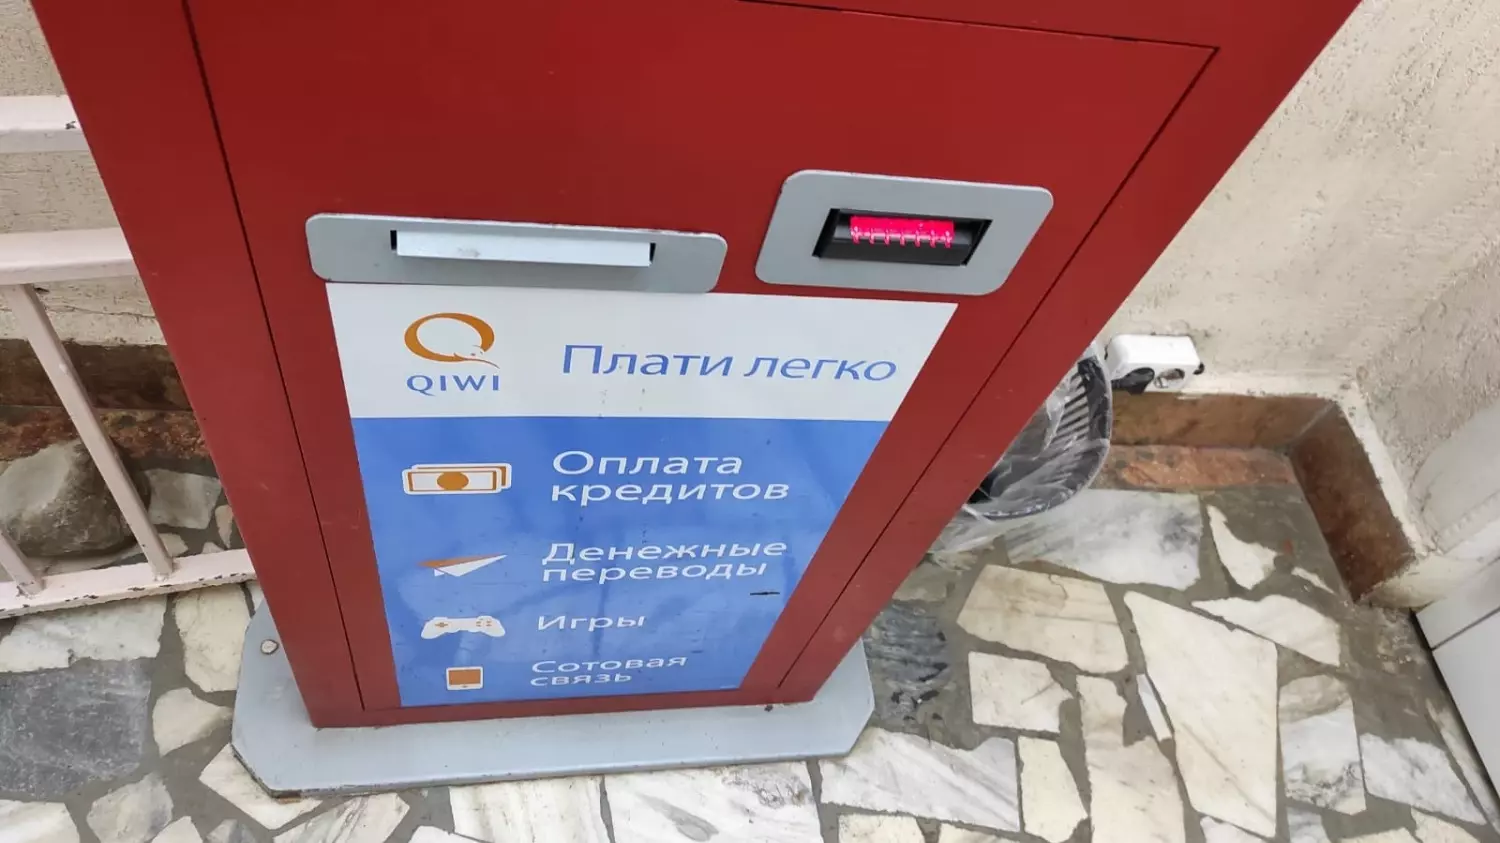 Платежные терминалы QIWI перестали работать на Ставрополье1